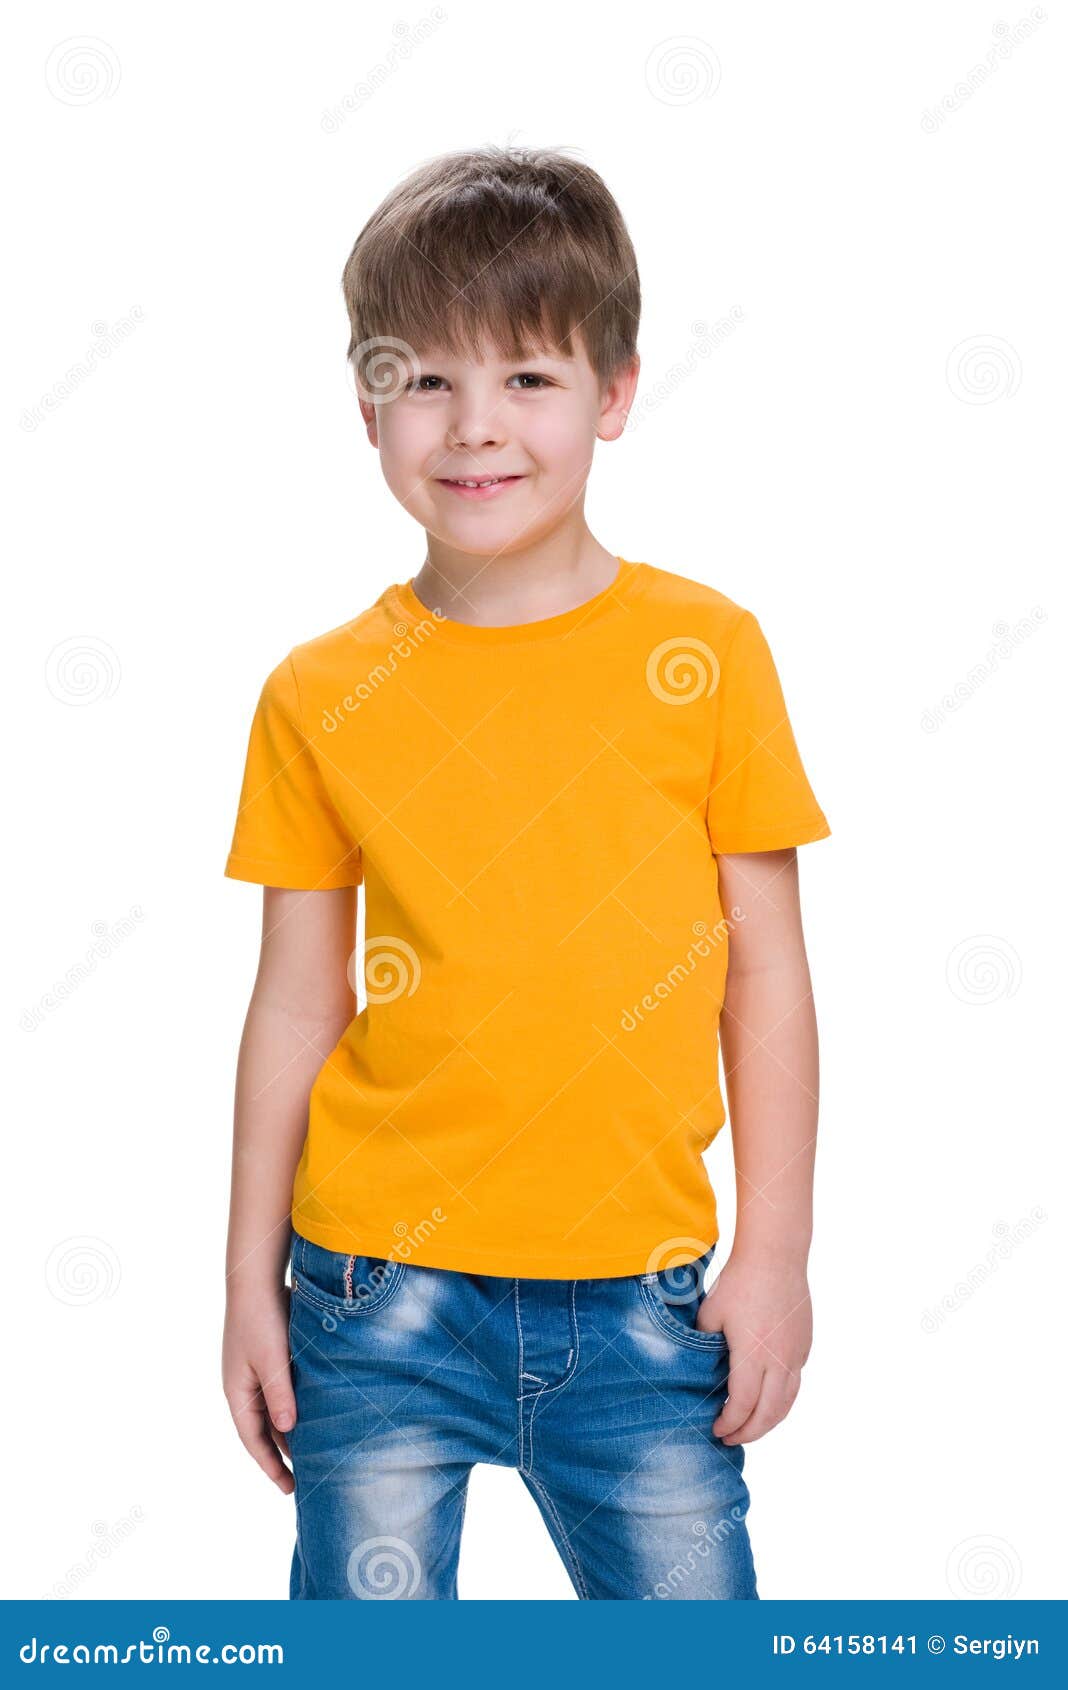 Un Niño Pequeño Lindo Con La Camiseta Amarilla Está En Contra El Fondo Azul  Fotos, retratos, imágenes y fotografía de archivo libres de derecho. Image  31453564